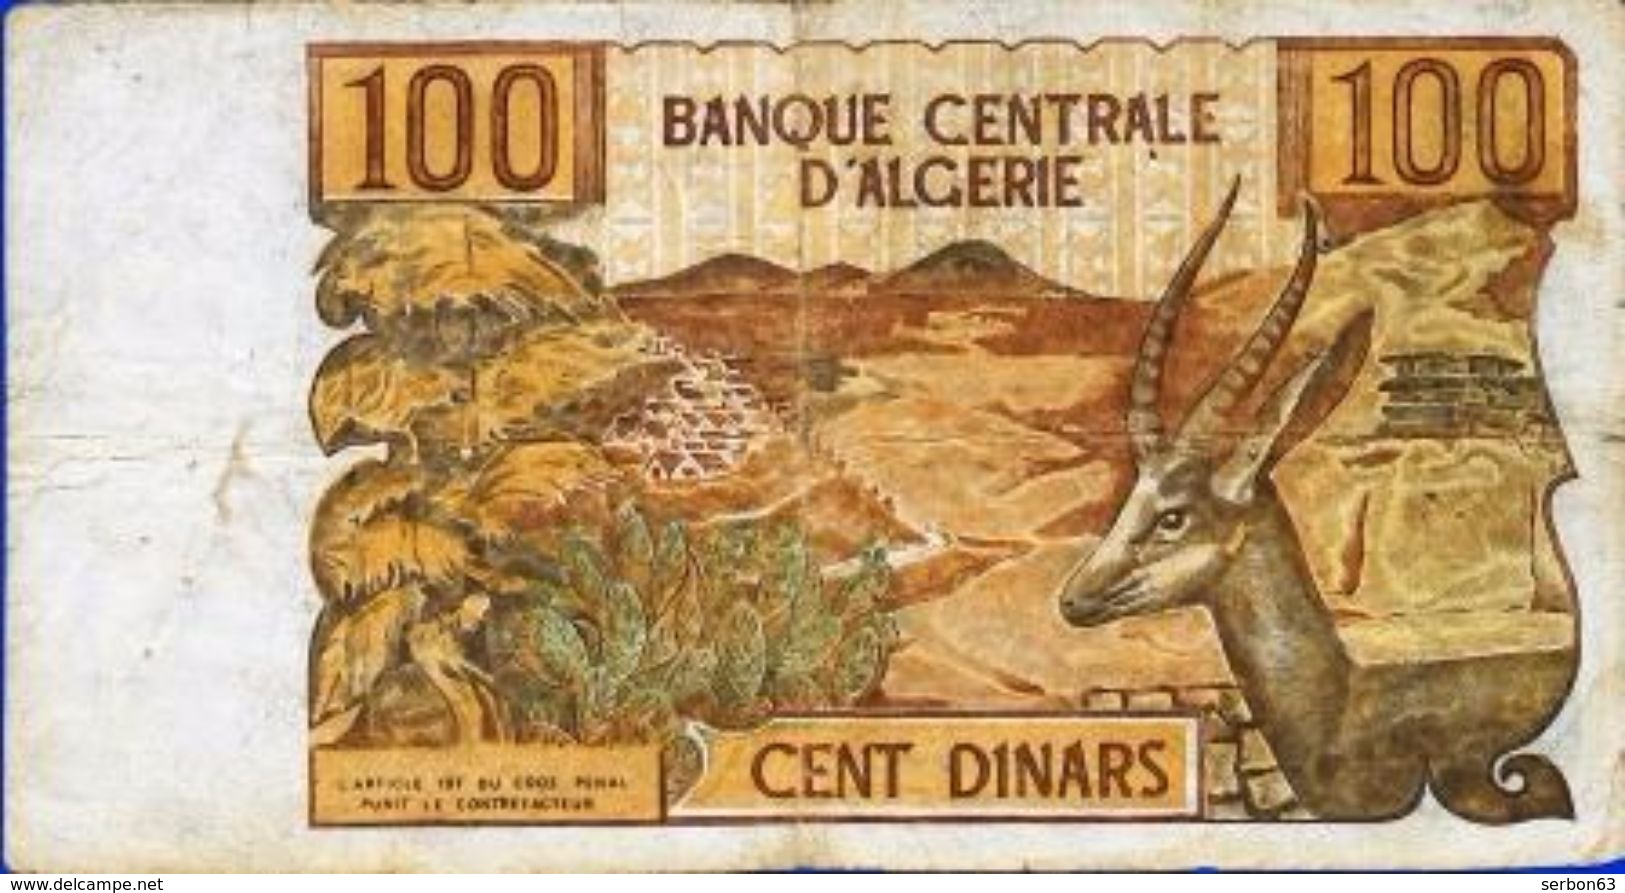 AFRIQUE BANQUE CENTRALE D'ALGERIE CENT DINARS N° 24789 N 056 MON SITE serbon63 DES MILLIERS D'ARTICLES EN VENTES